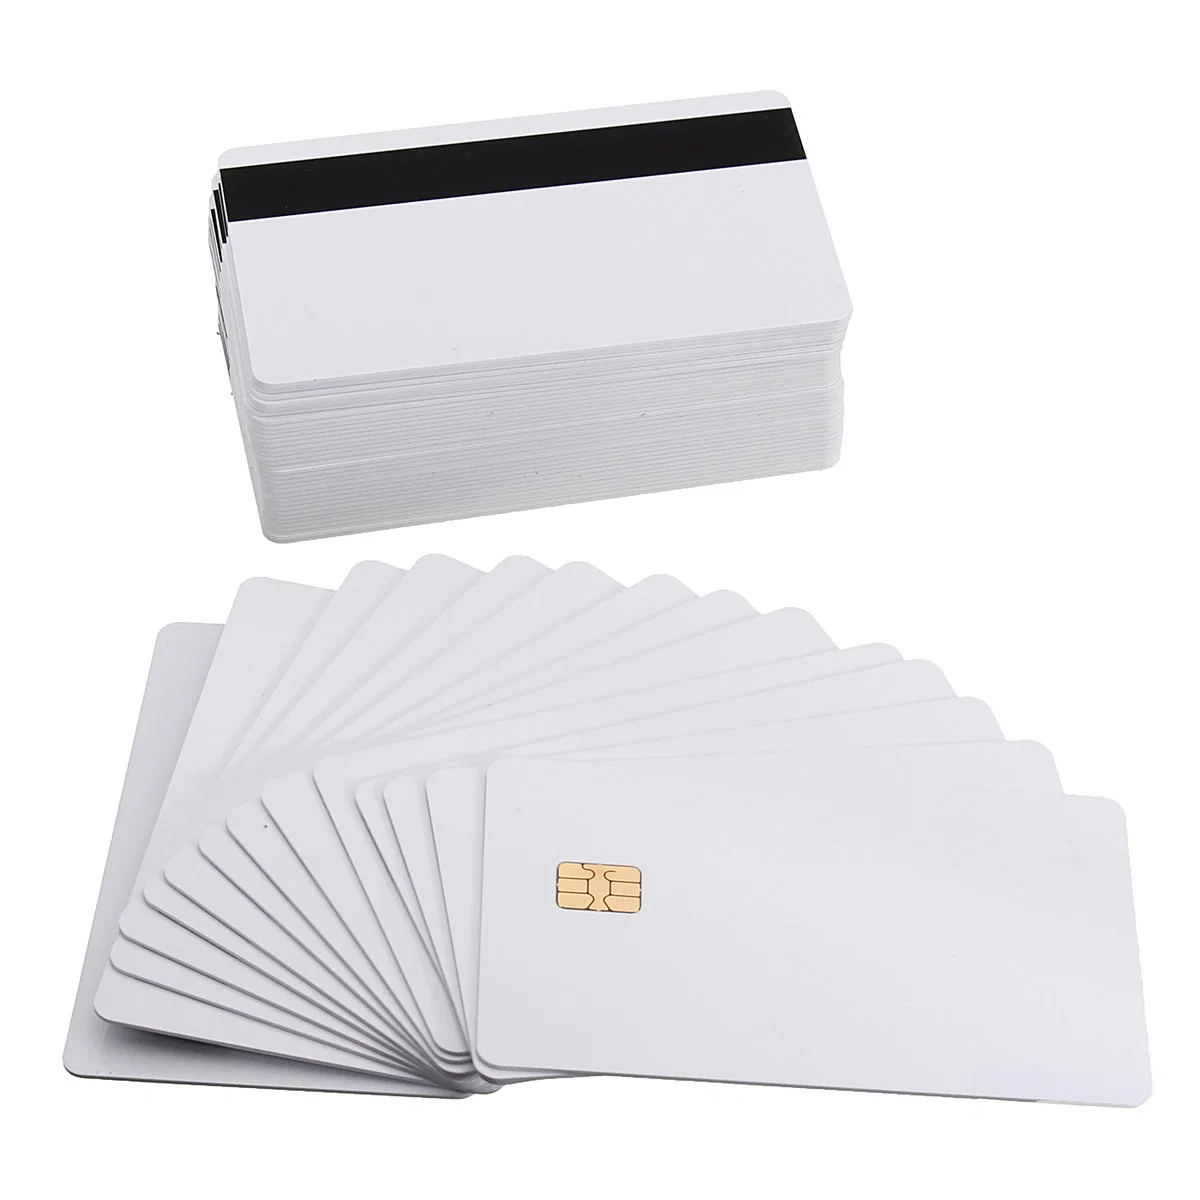 Bedruckbare PVC Blank Magnetstreifen Smart Card Kreditkartengröße Karten für Bank